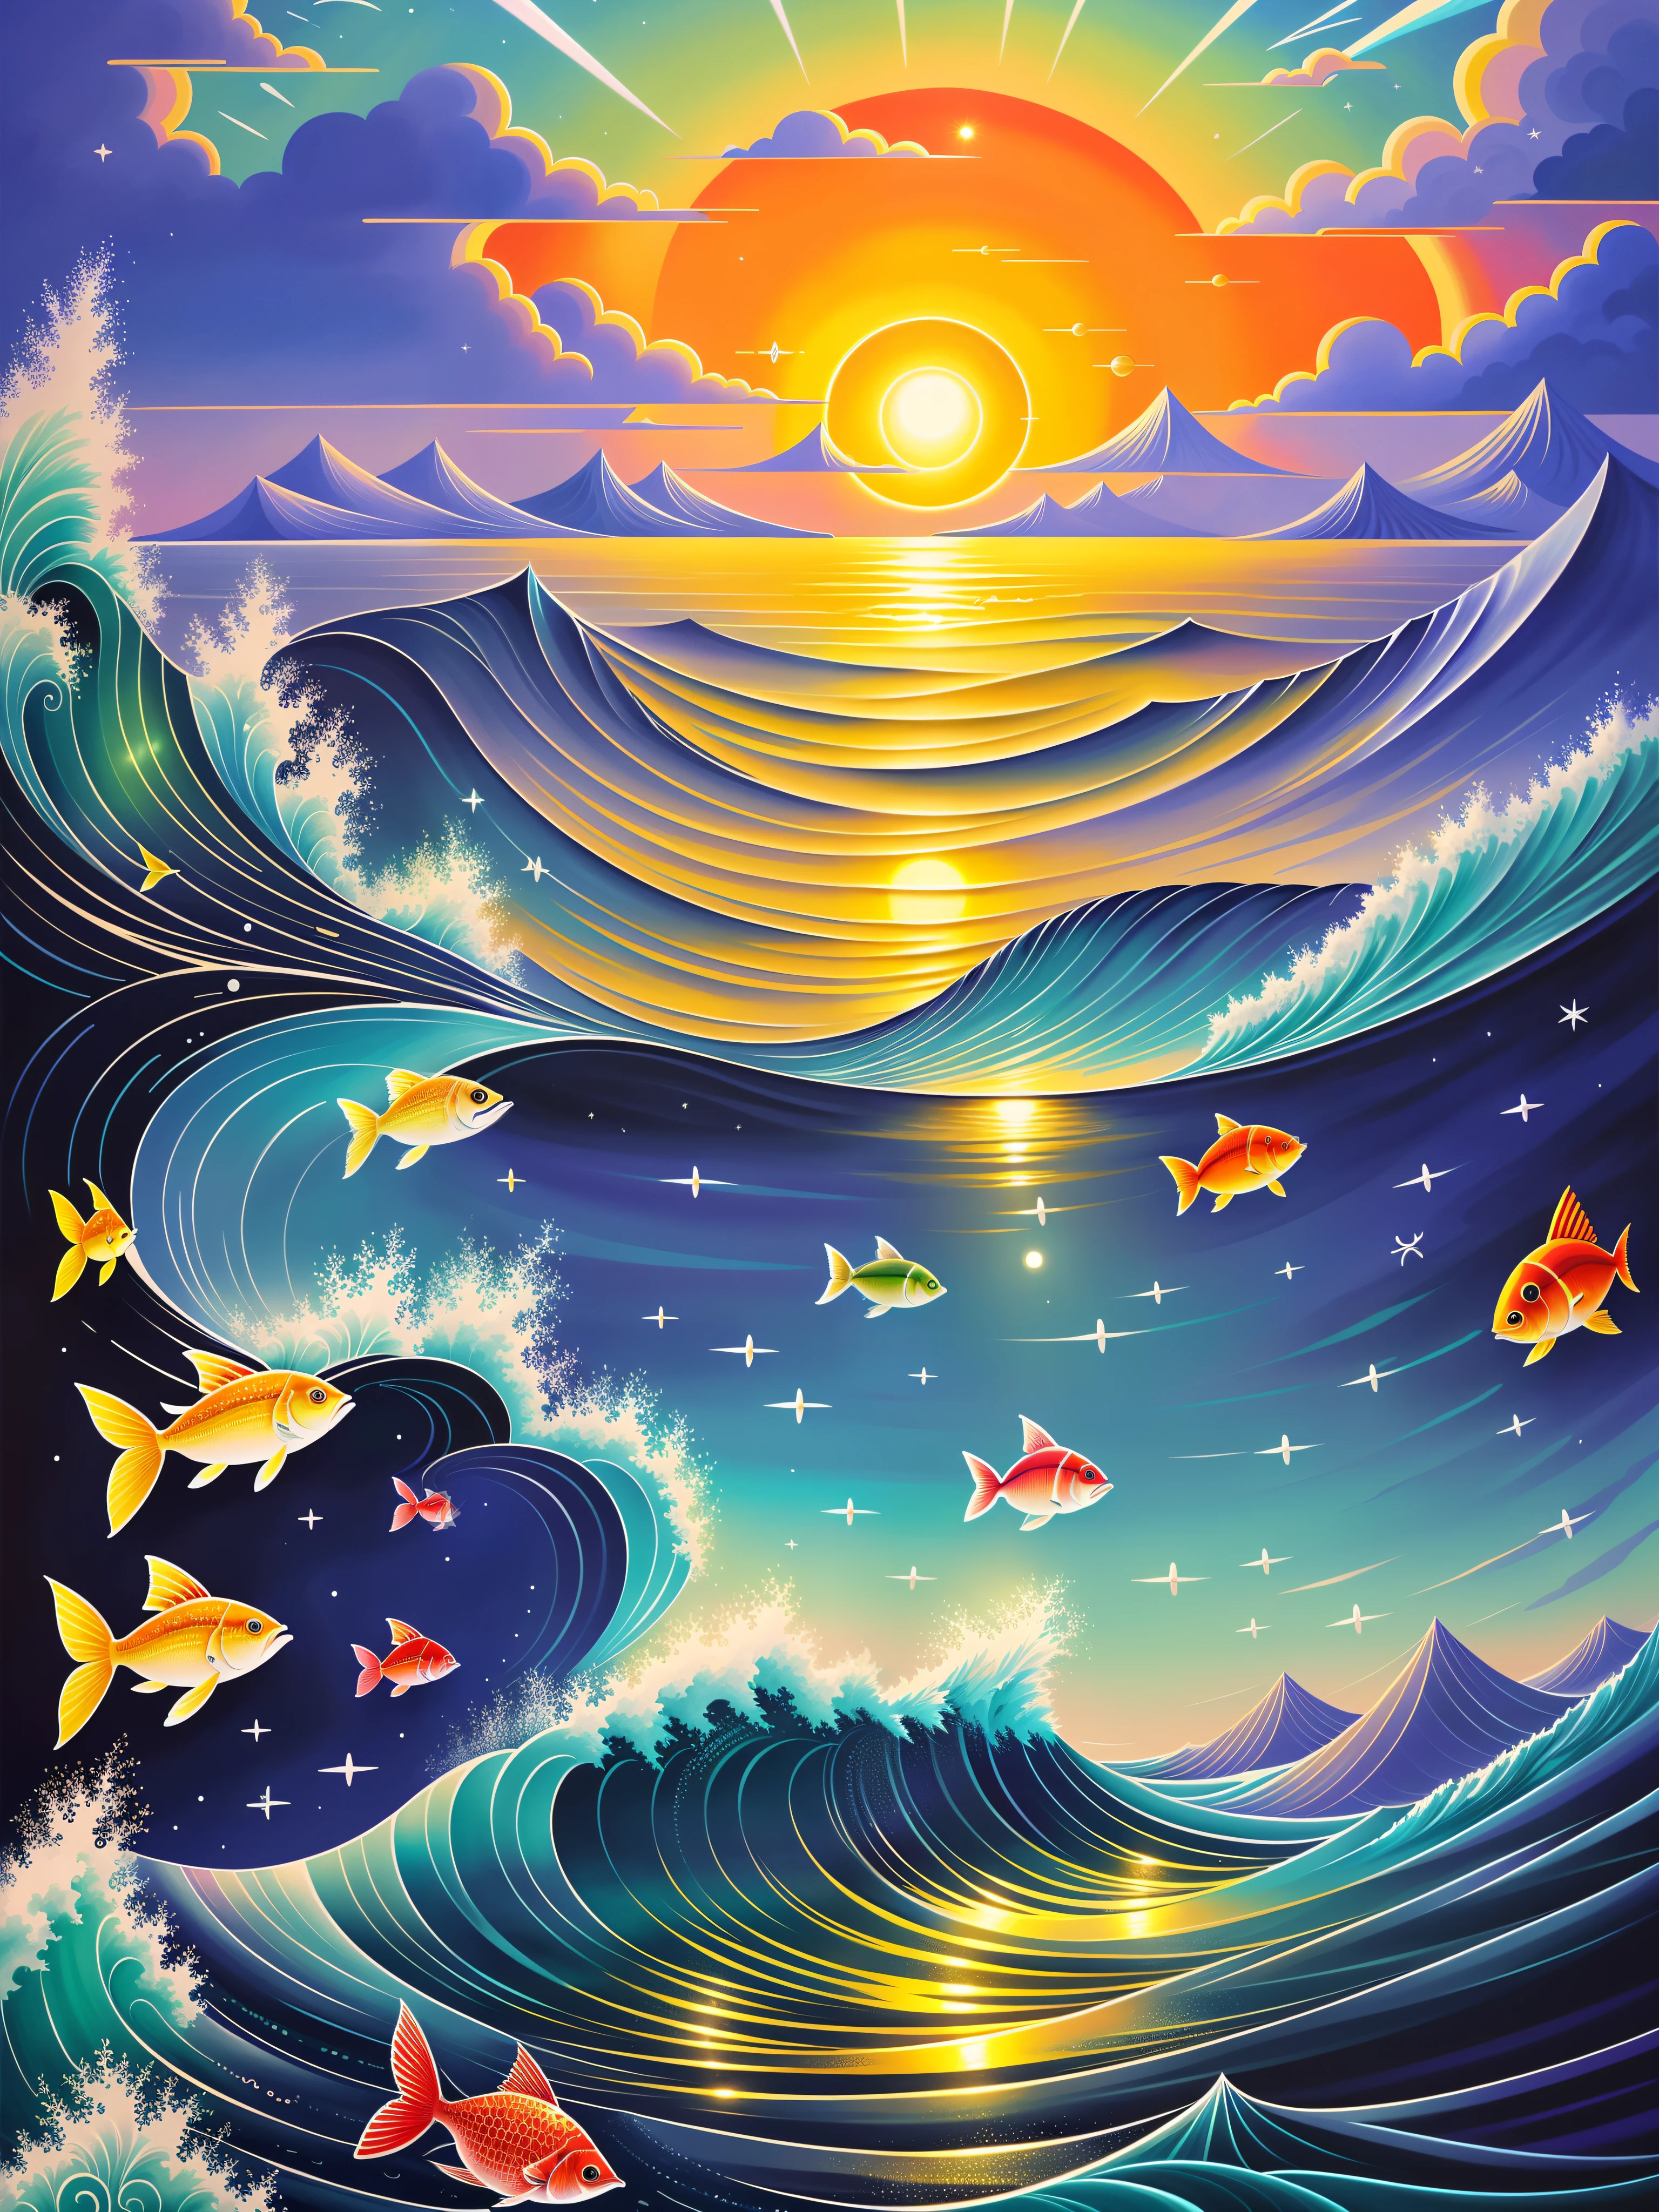 带有太阳和鱼的彩色插图的海洋场景, （（（月圆））），很多鱼，只是个玩笑, 一幅美丽的艺术插图, 神奇的海洋, 灵感来自西里尔·罗兰多 (Cyril Rolando), 奇幻海景, 精美艺术 UHD 8K, 高度精细的数字绘画, 西里尔·罗兰多风格, 8k 高度精细的数字艺术, 细致的梦境, 多彩扁平超现实空灵, 混乱的海洋环境